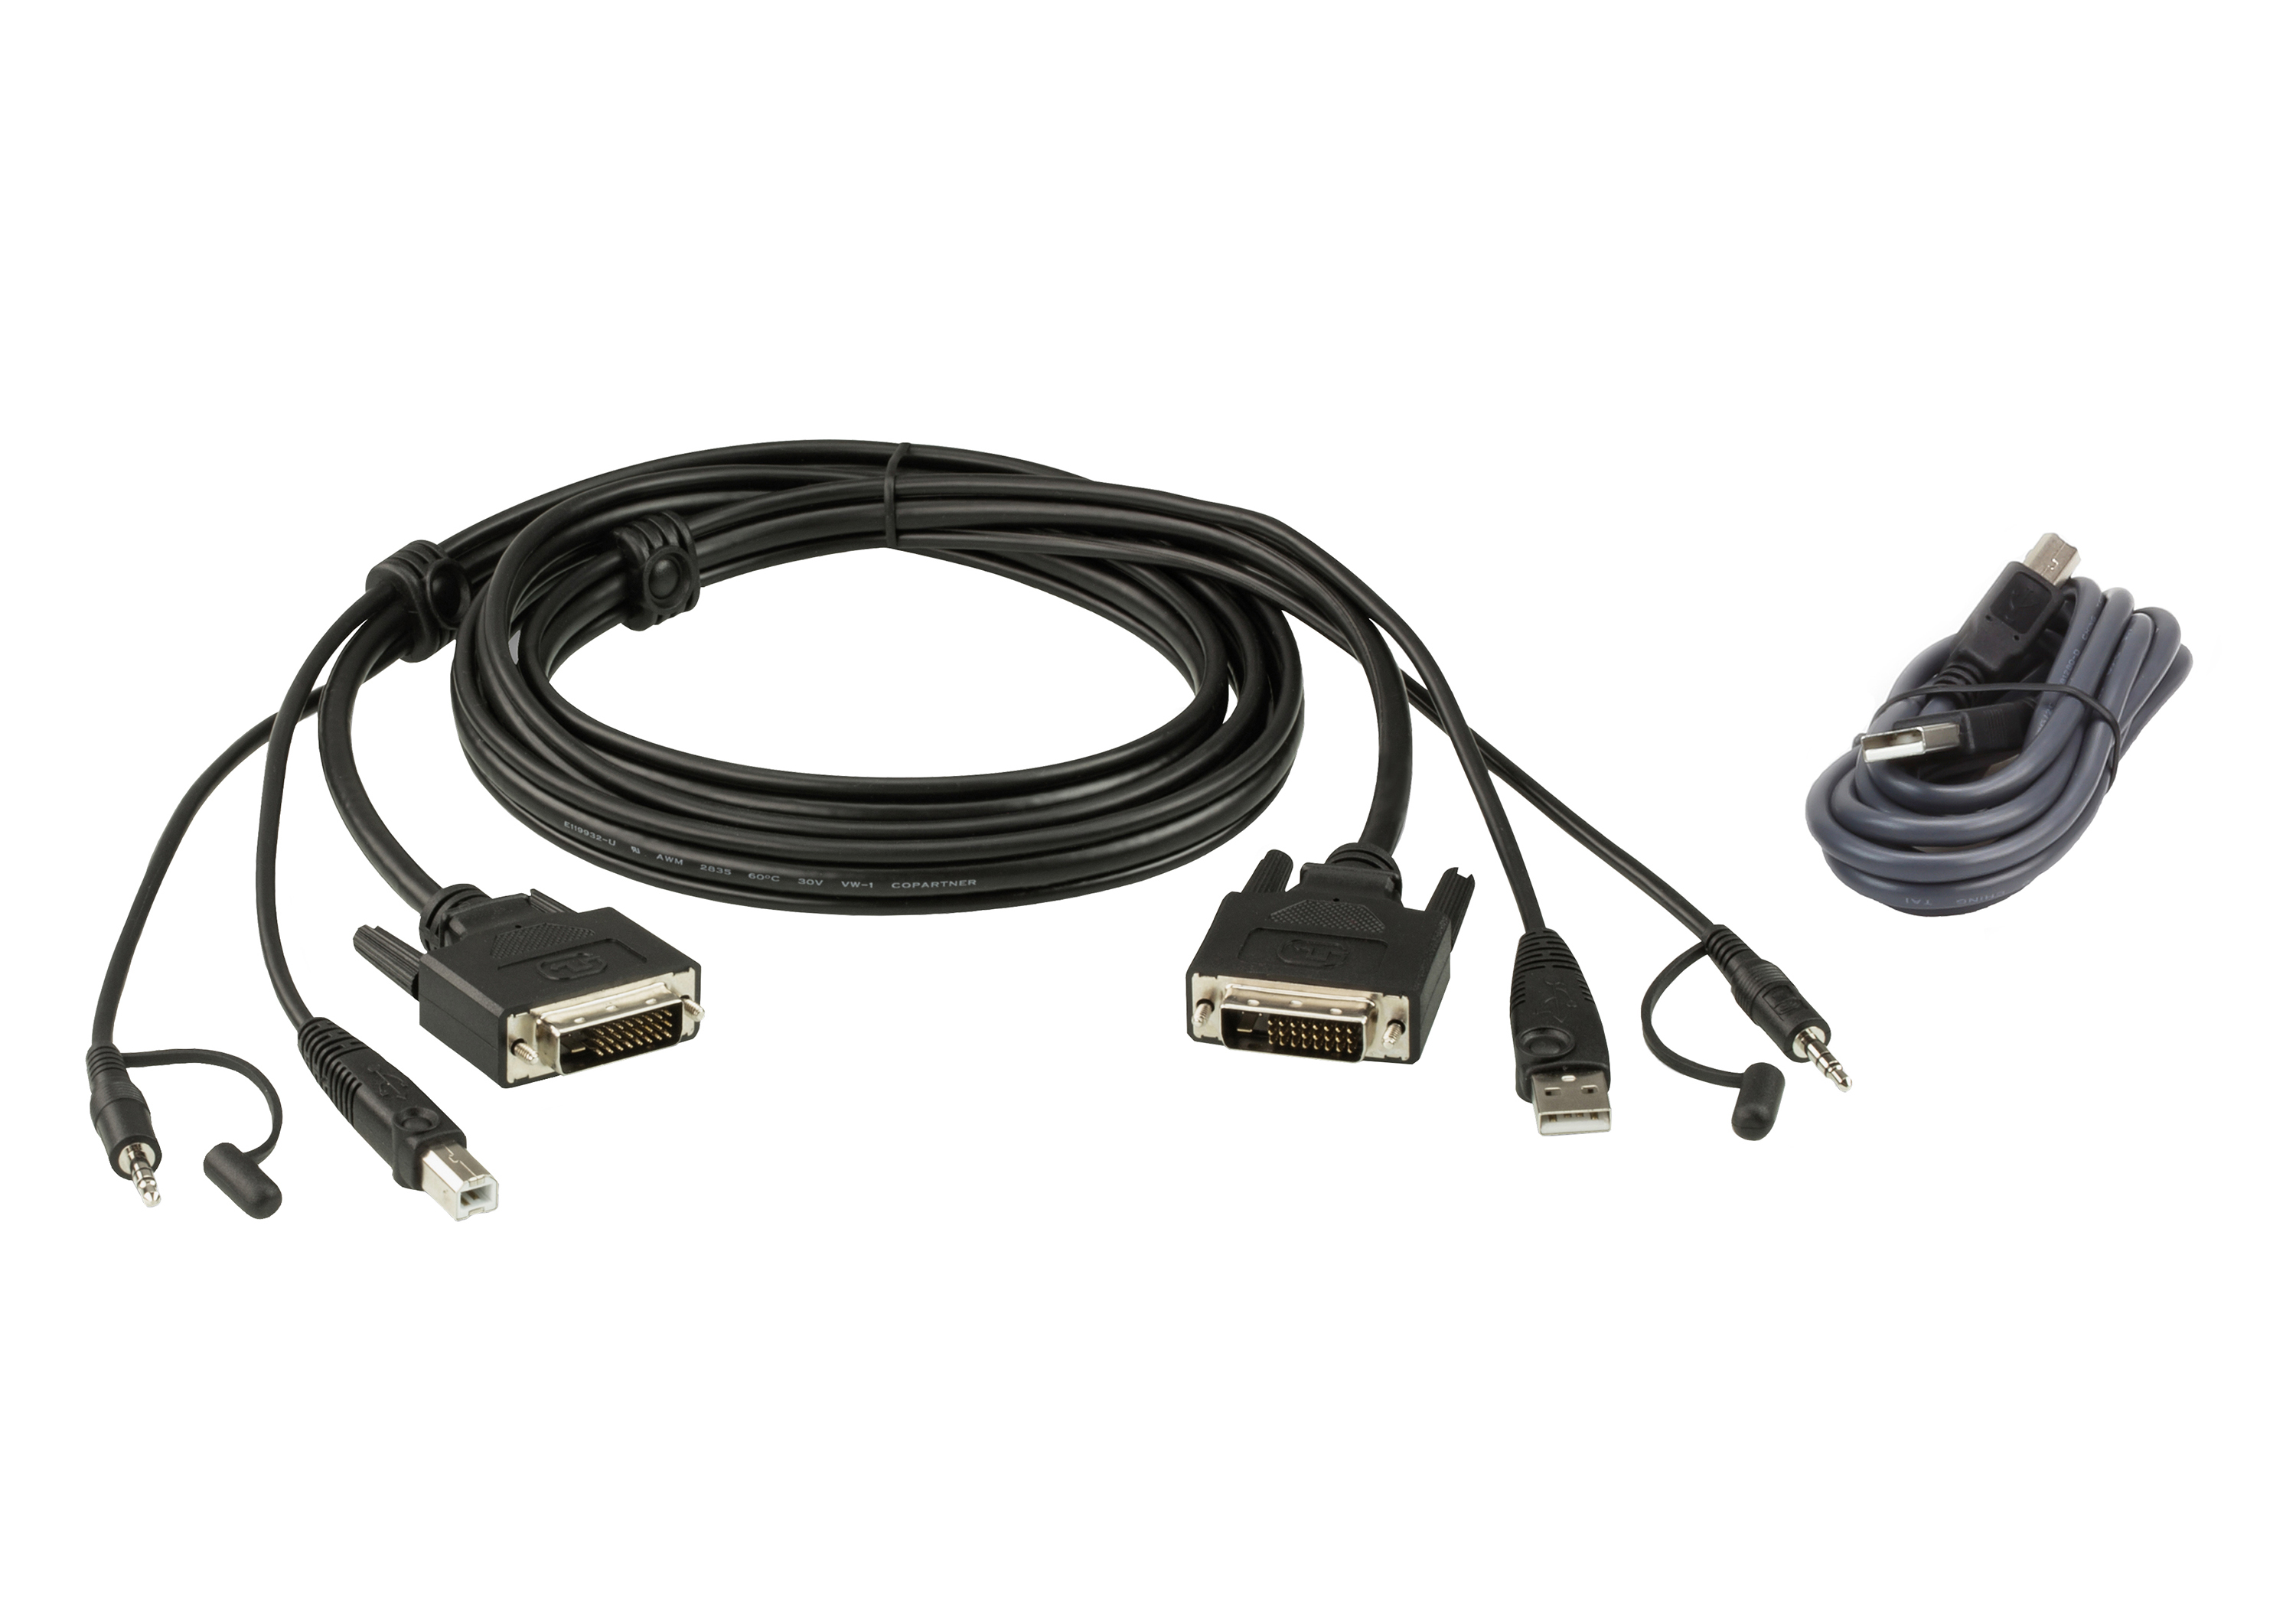 ATEN 3 m USB DVI-D Dual Link Secure KVM Cable Kit